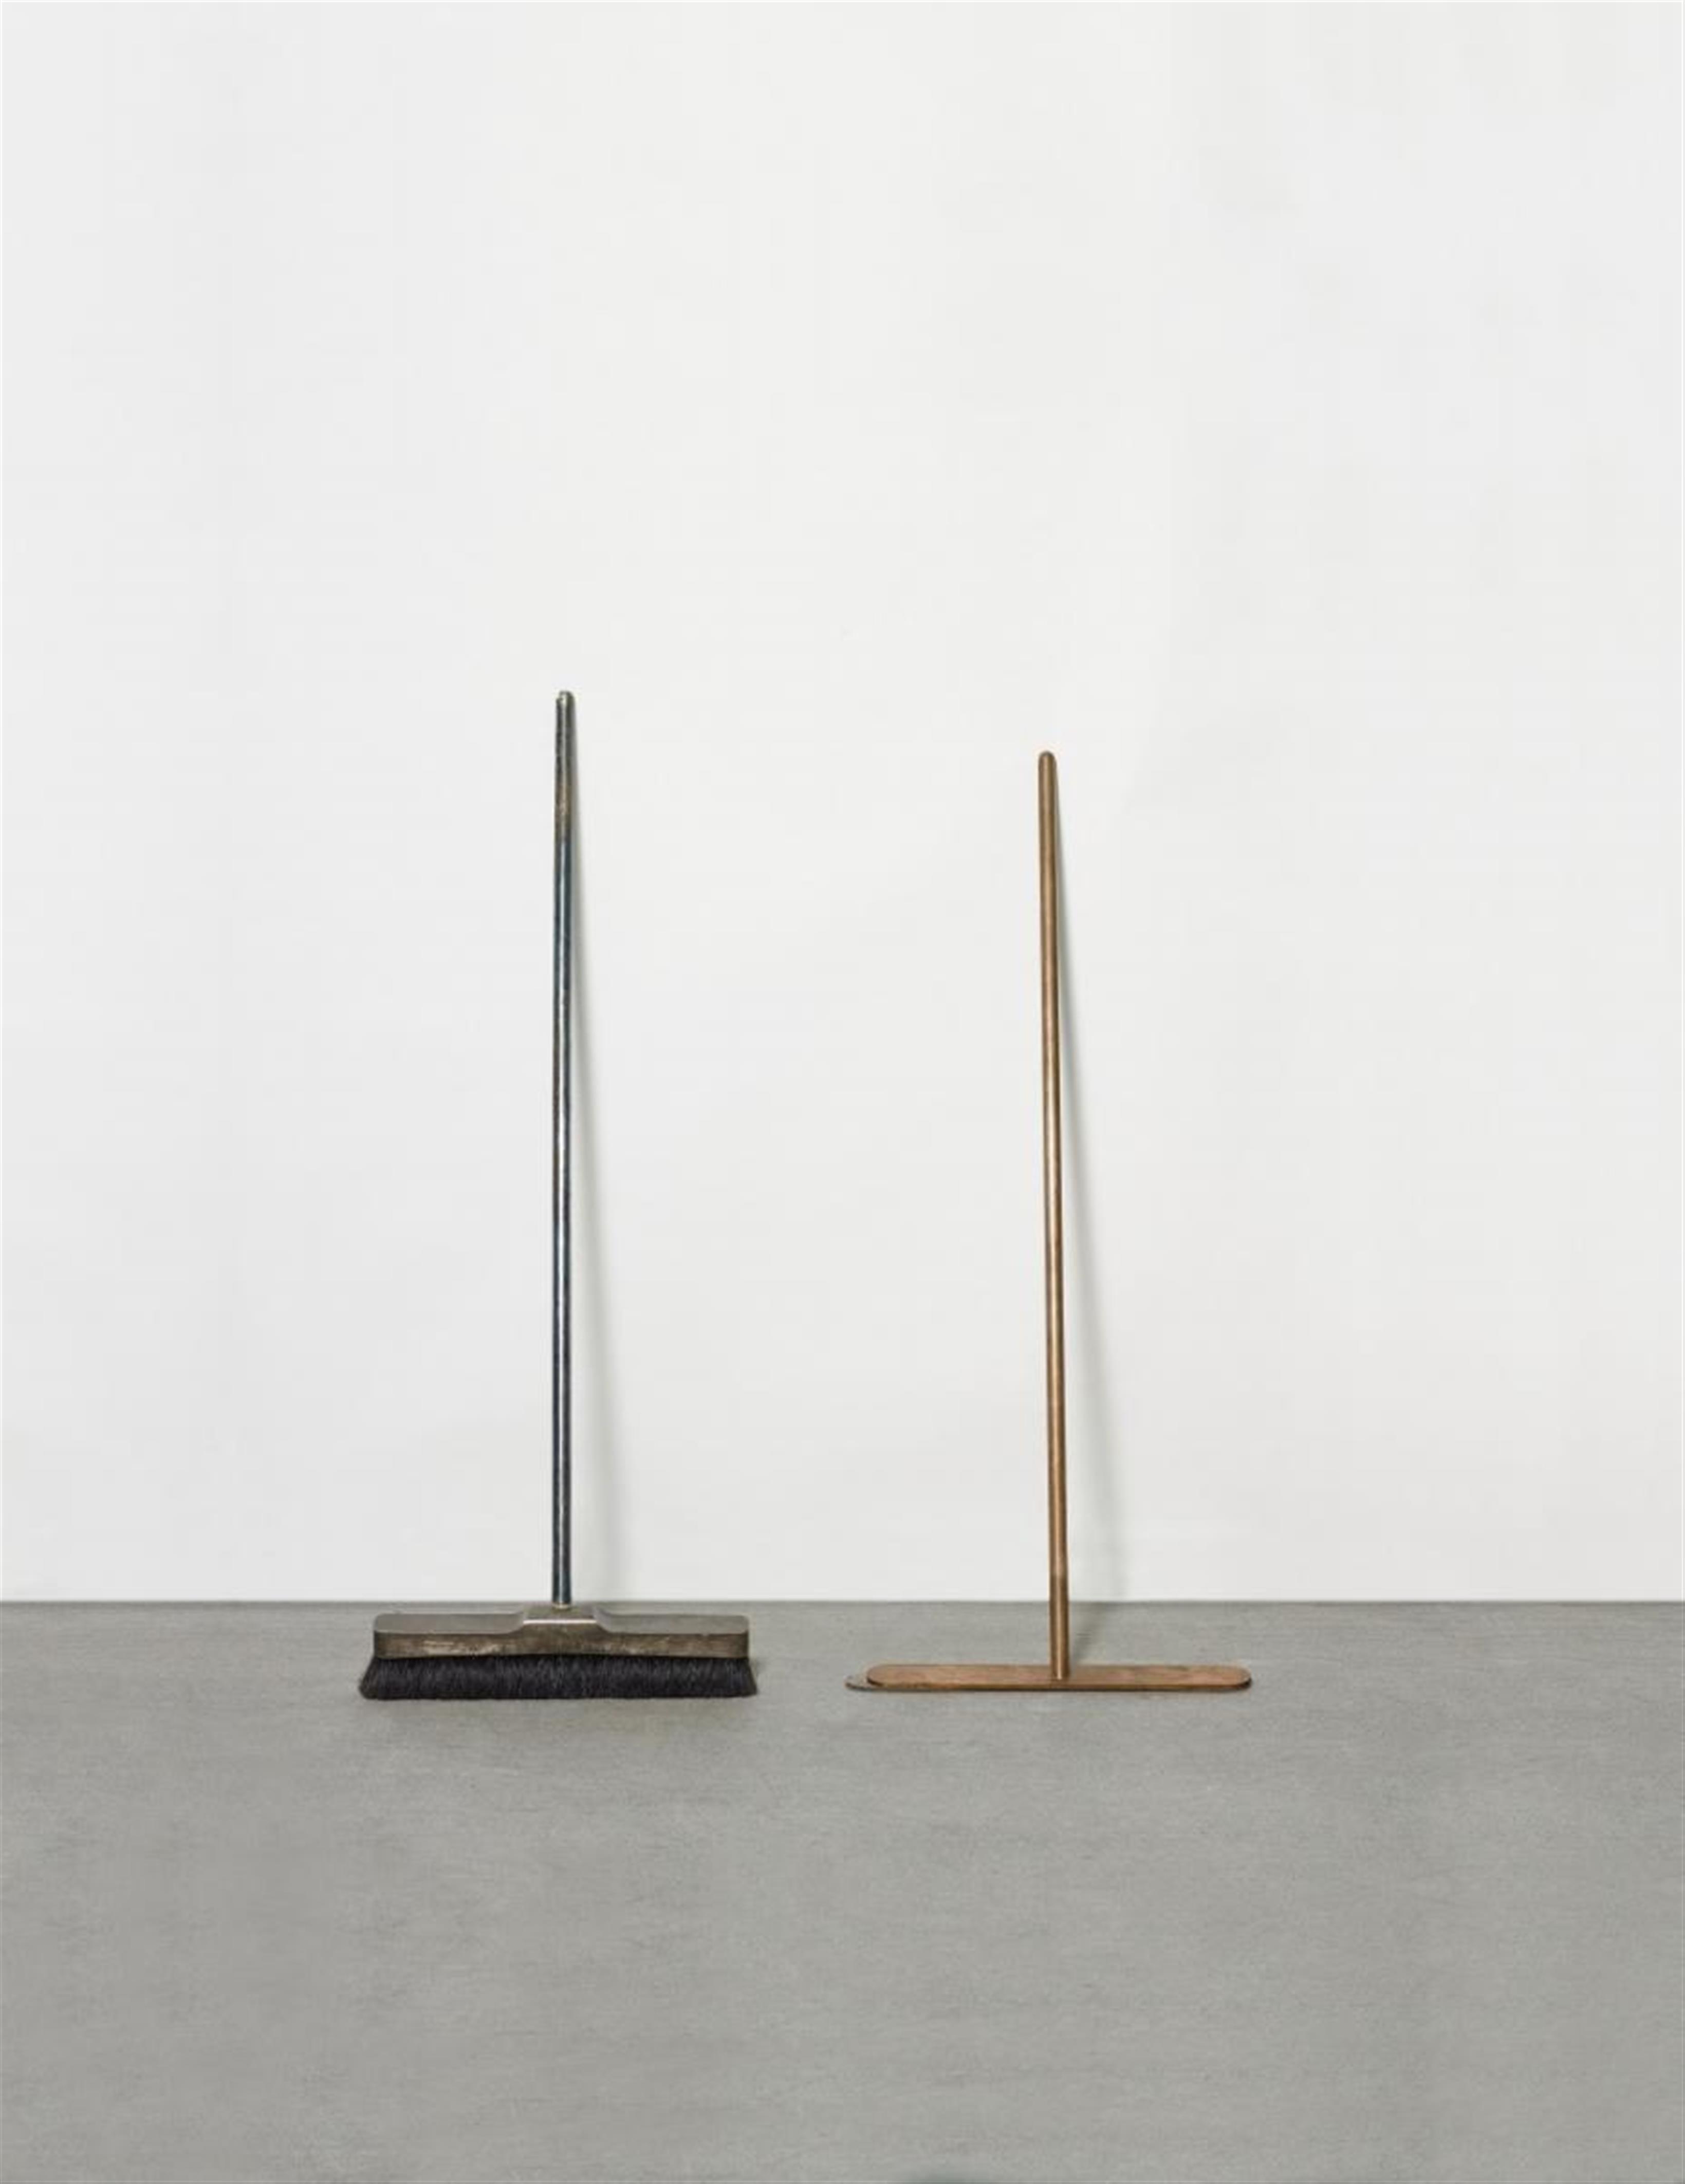 Joseph Beuys - Silberbesen und Besen ohne Haare - image-1